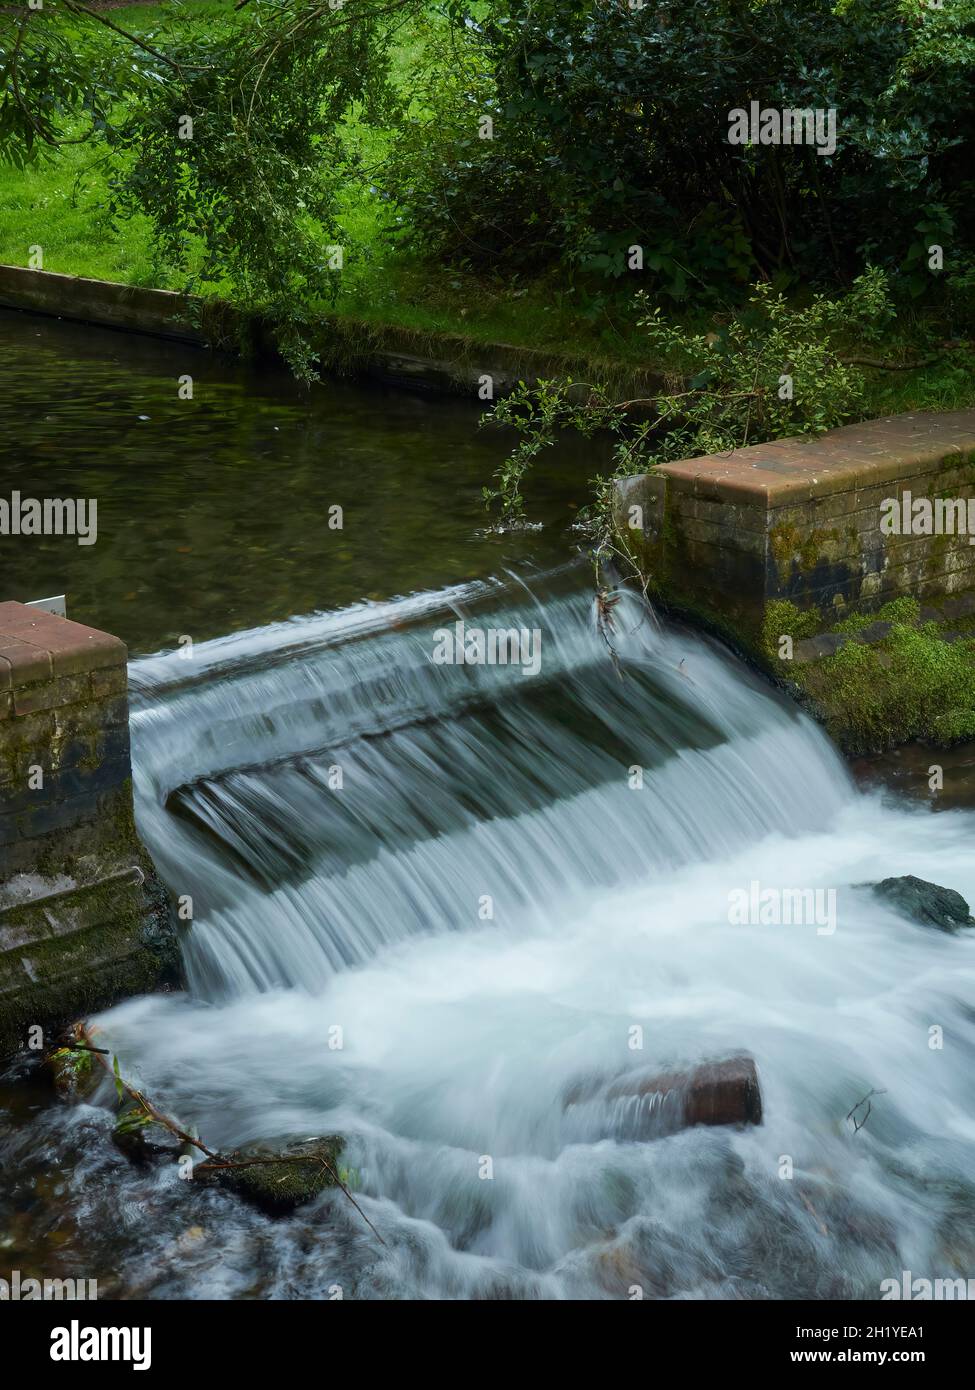 Una piccola cascata di struzzi a più livelli circondata da alberi in un parco suburbano, scattata con un otturatore lento per catturare la susurrazione dell'acqua che cade. Foto Stock